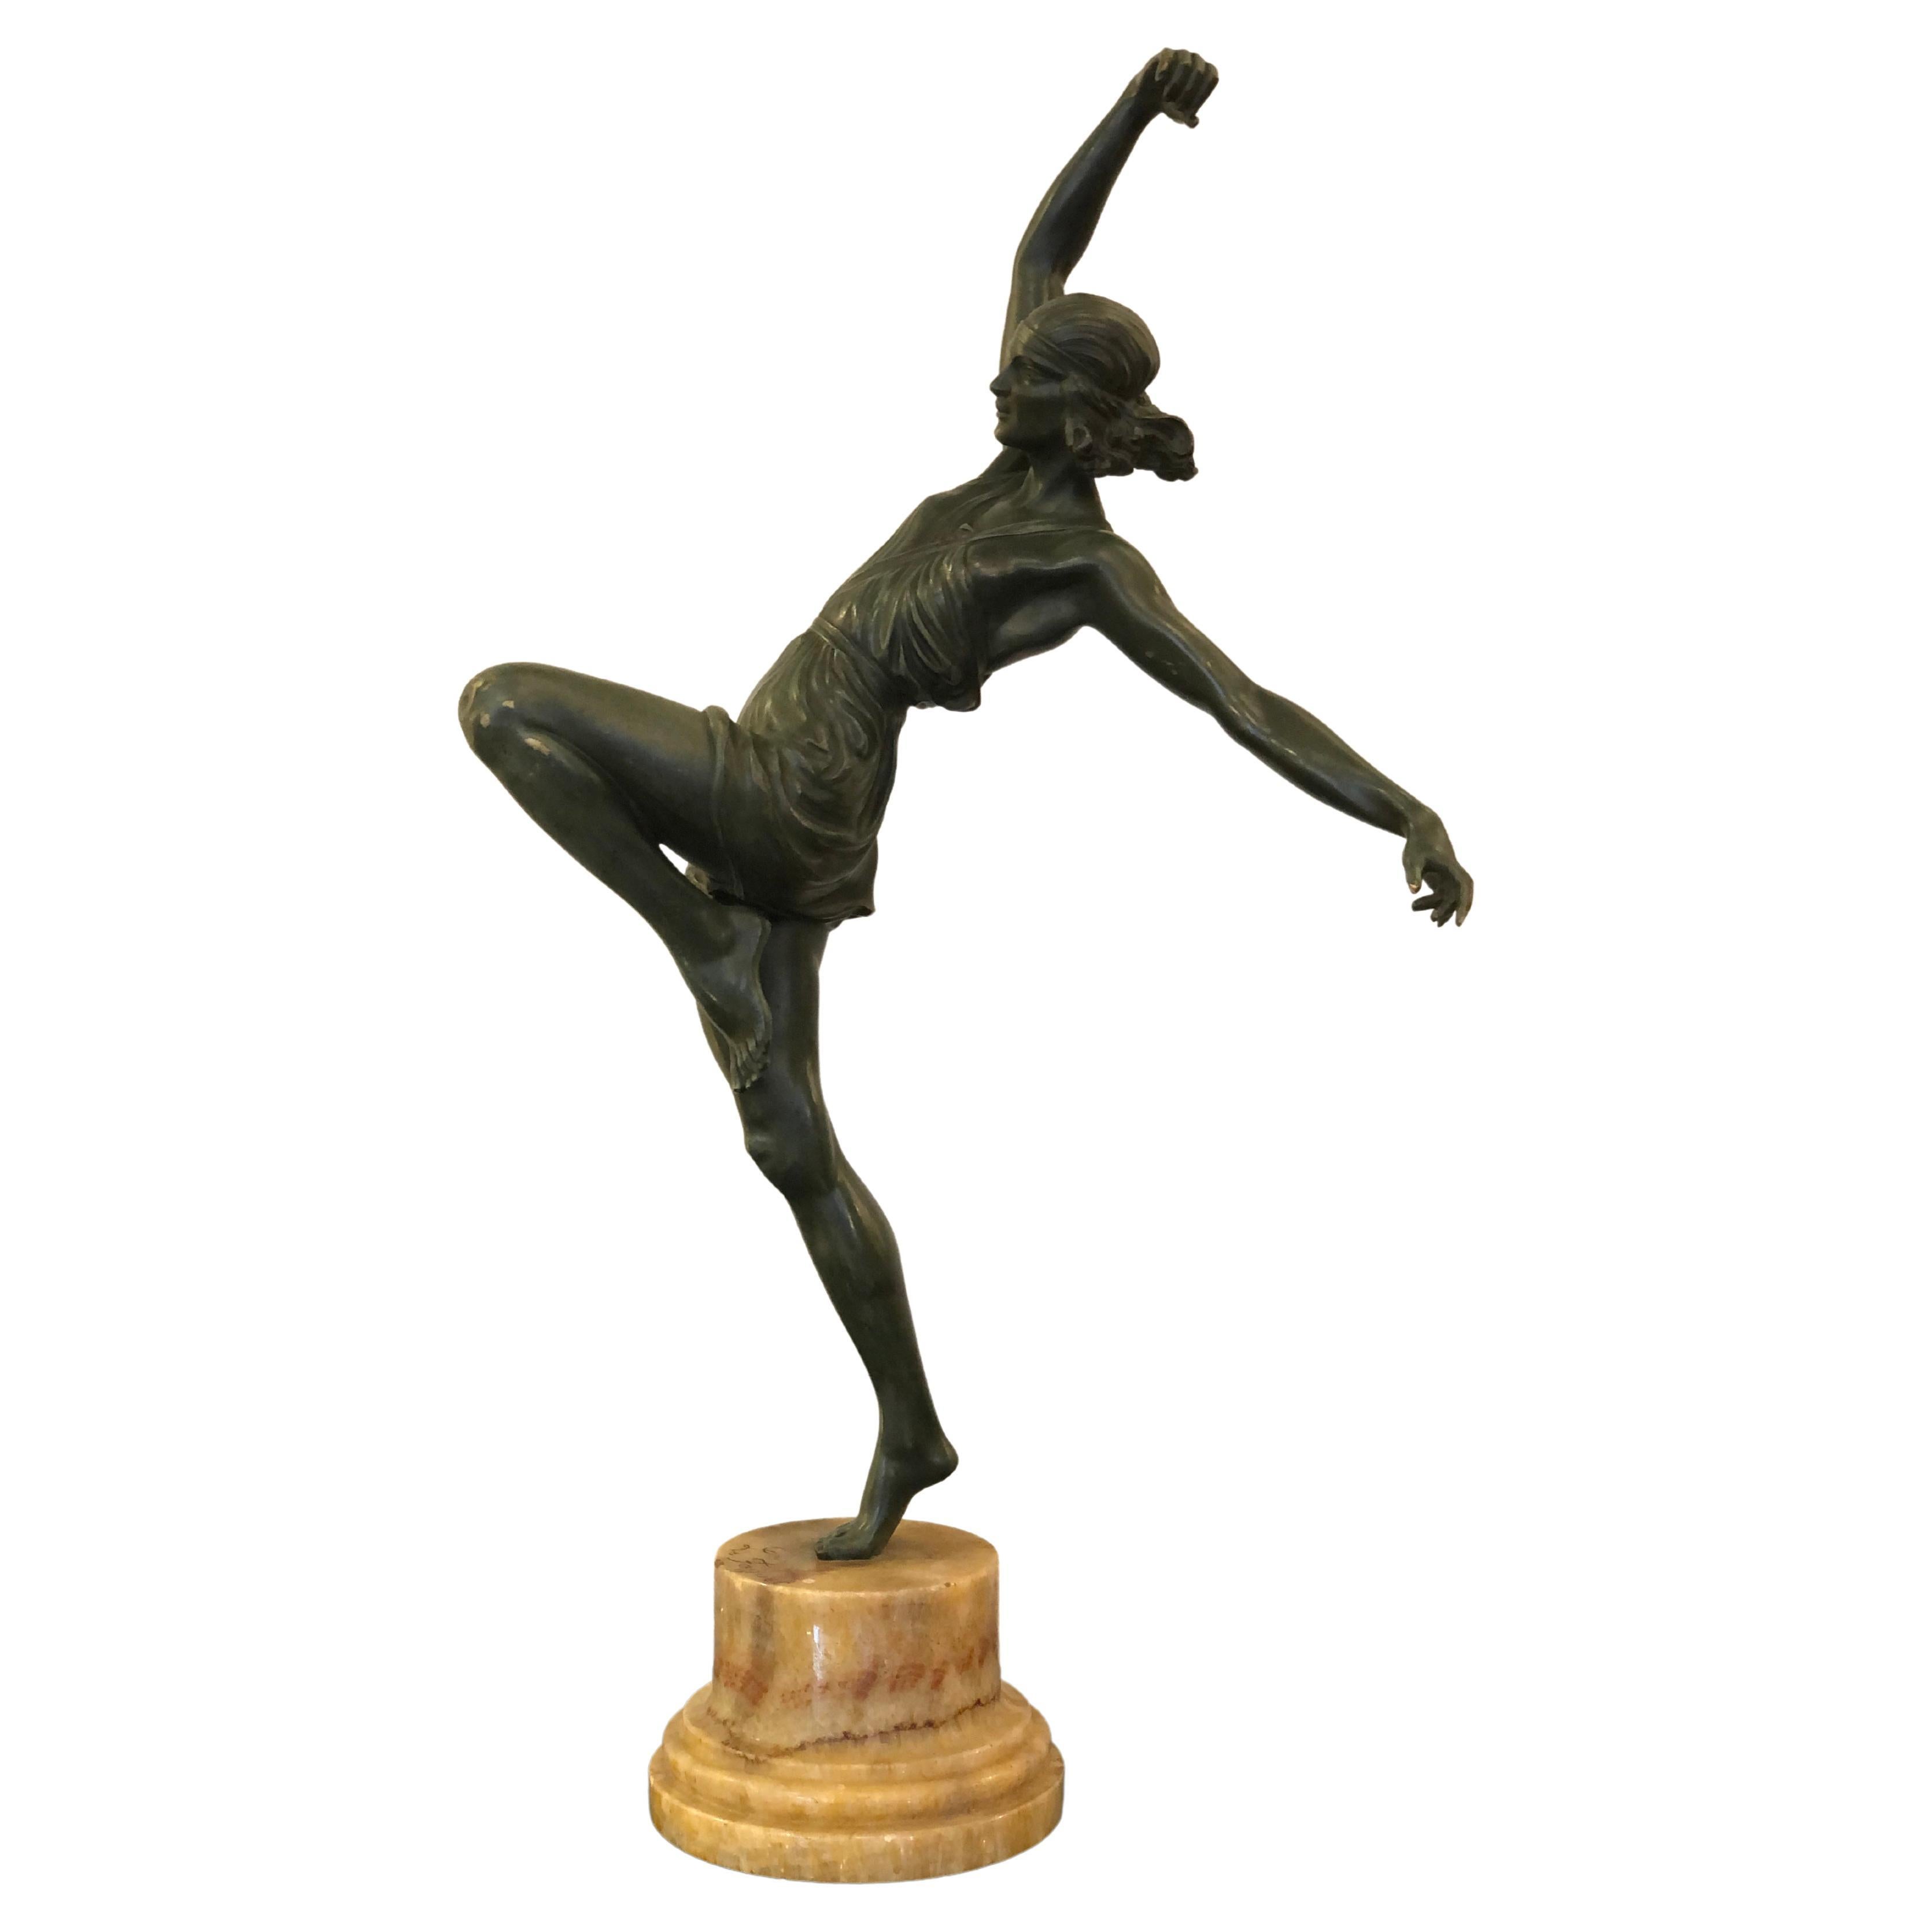 Art Deco Dancer Bronze Sculpture Signed "Le Faguet" on Marble Base